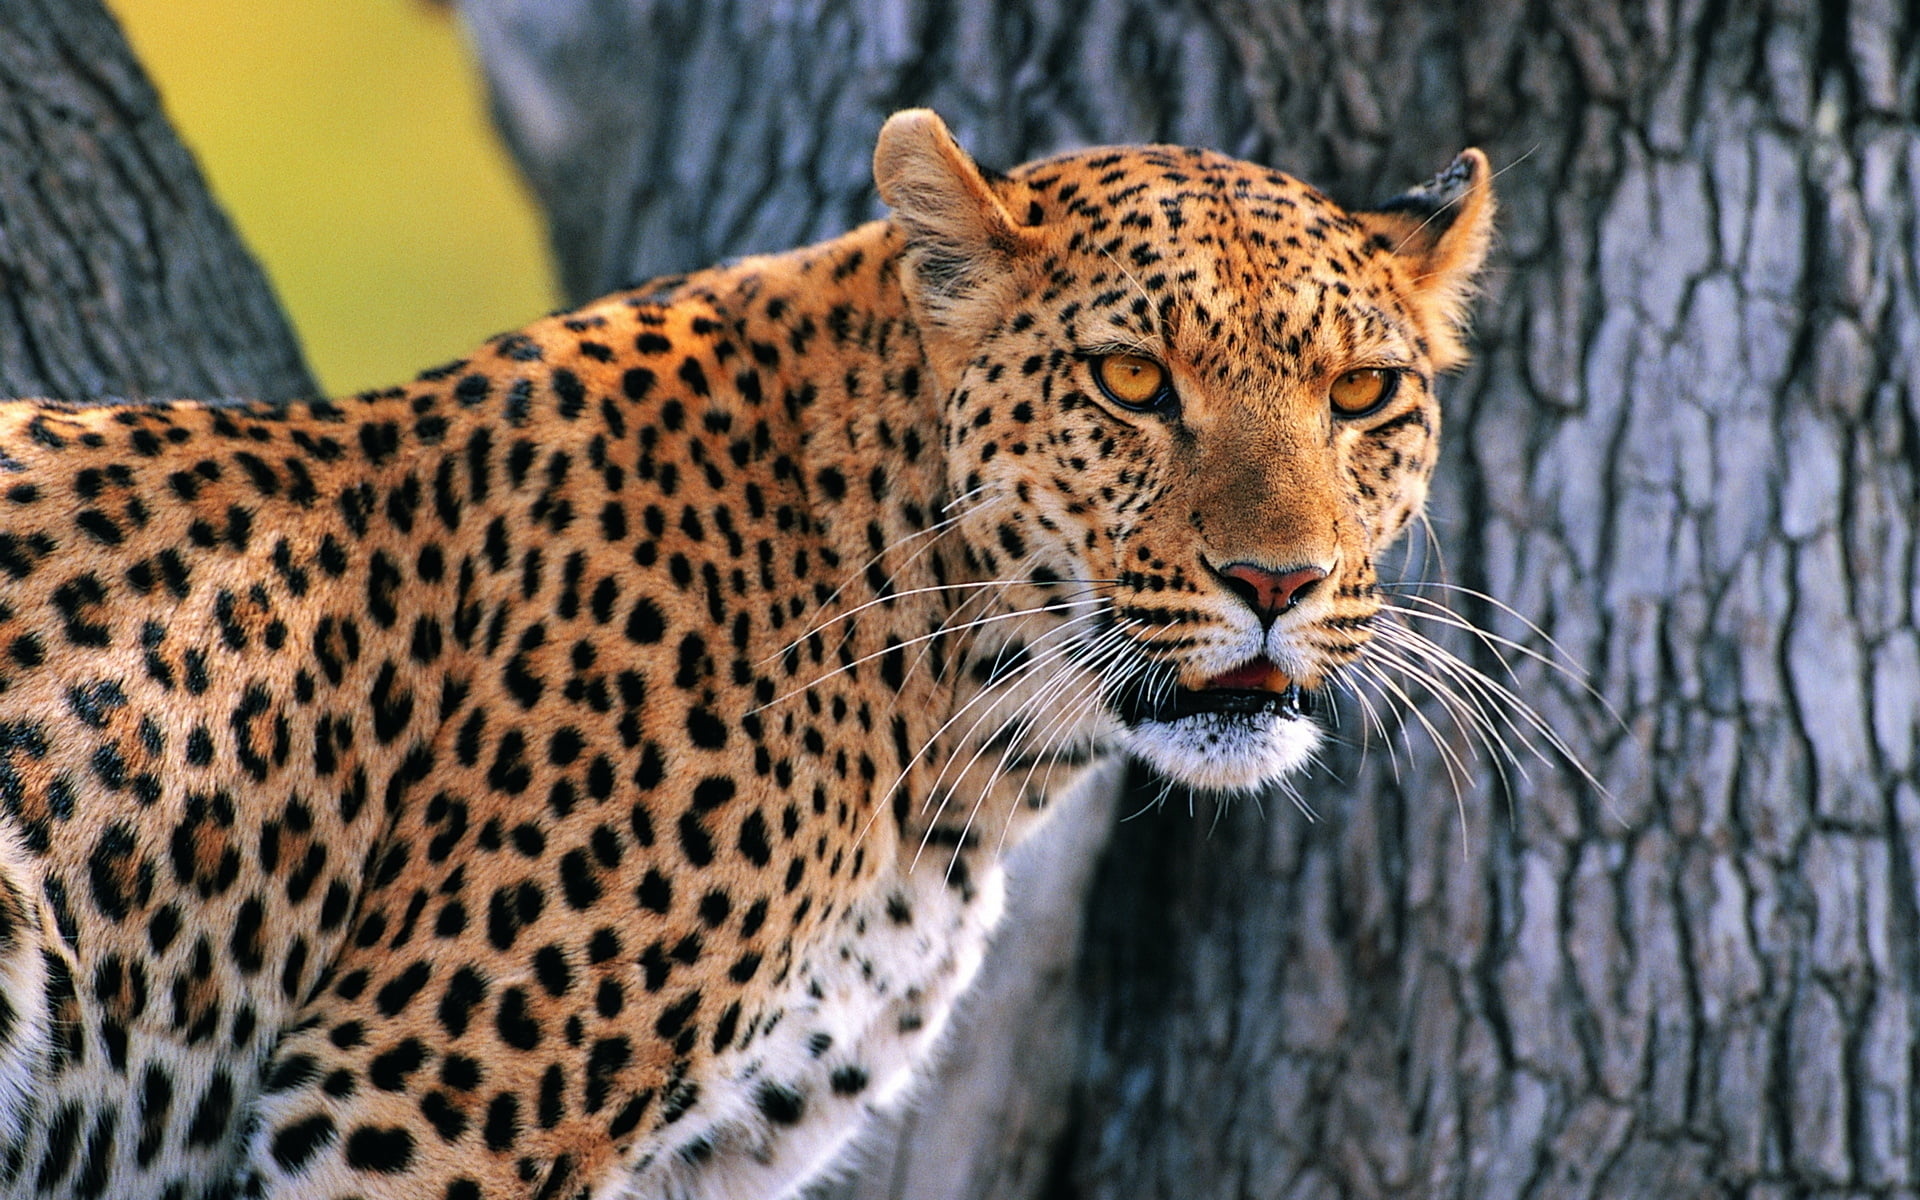 leopard near gray tree trunk